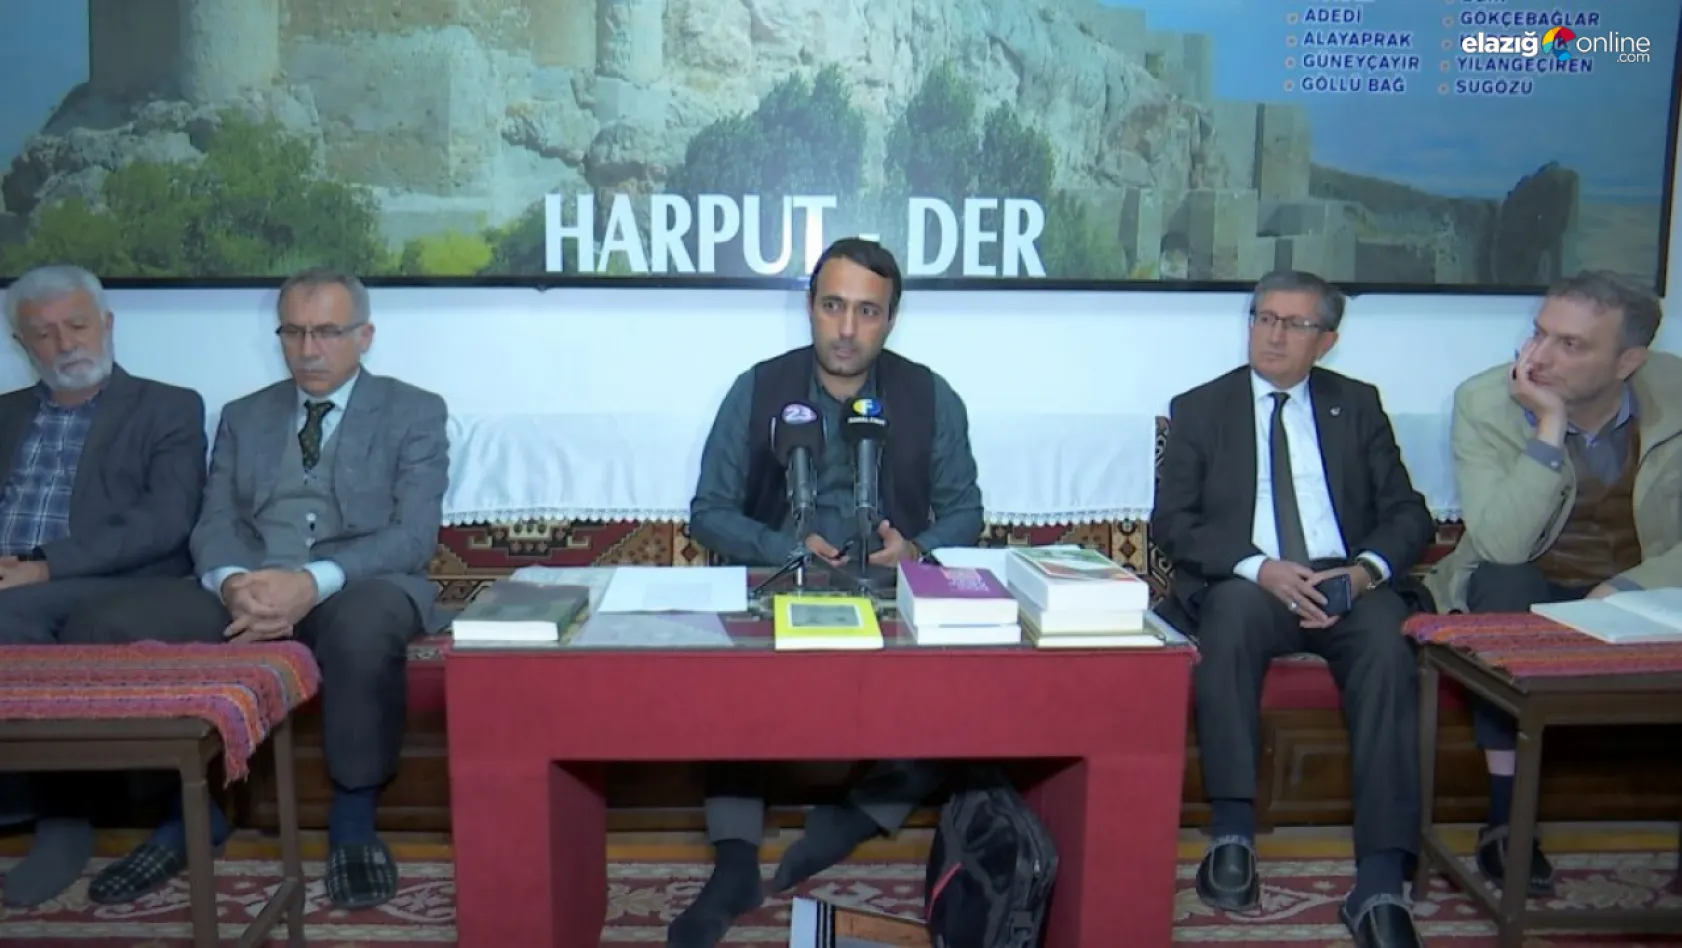 Harput-Der'in geleneksel kürsübaşı sohbetleri devam ediyor